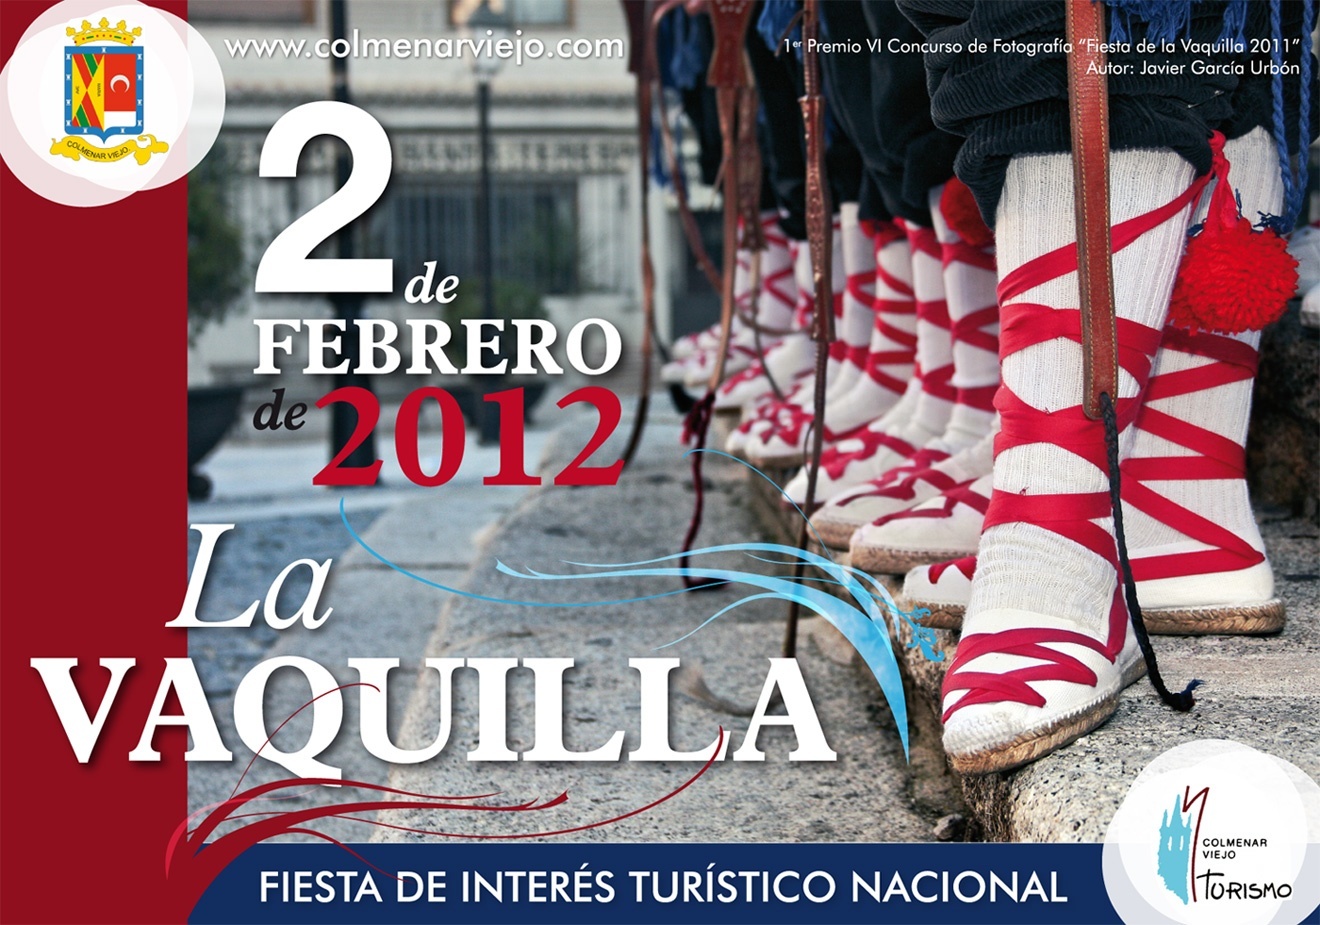 La tradicional fiesta de »La Vaquilla» llenará el 2 de febrero de color y sonido el municipio